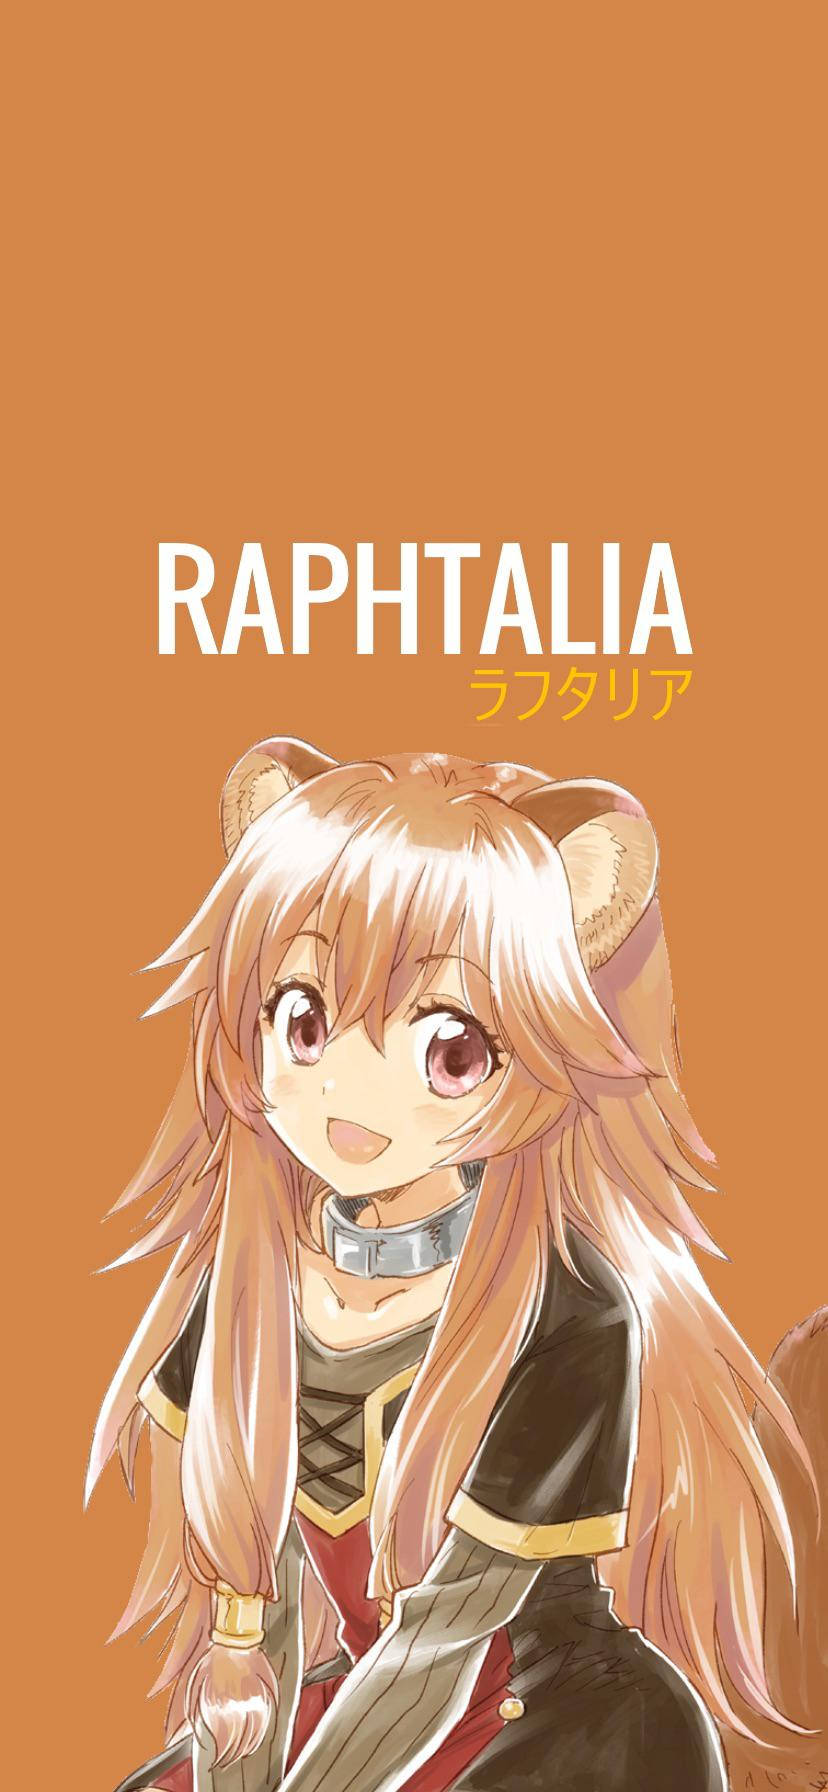 Raphaela - Raphaela - Raphaela - Raphaela - Raphae Background